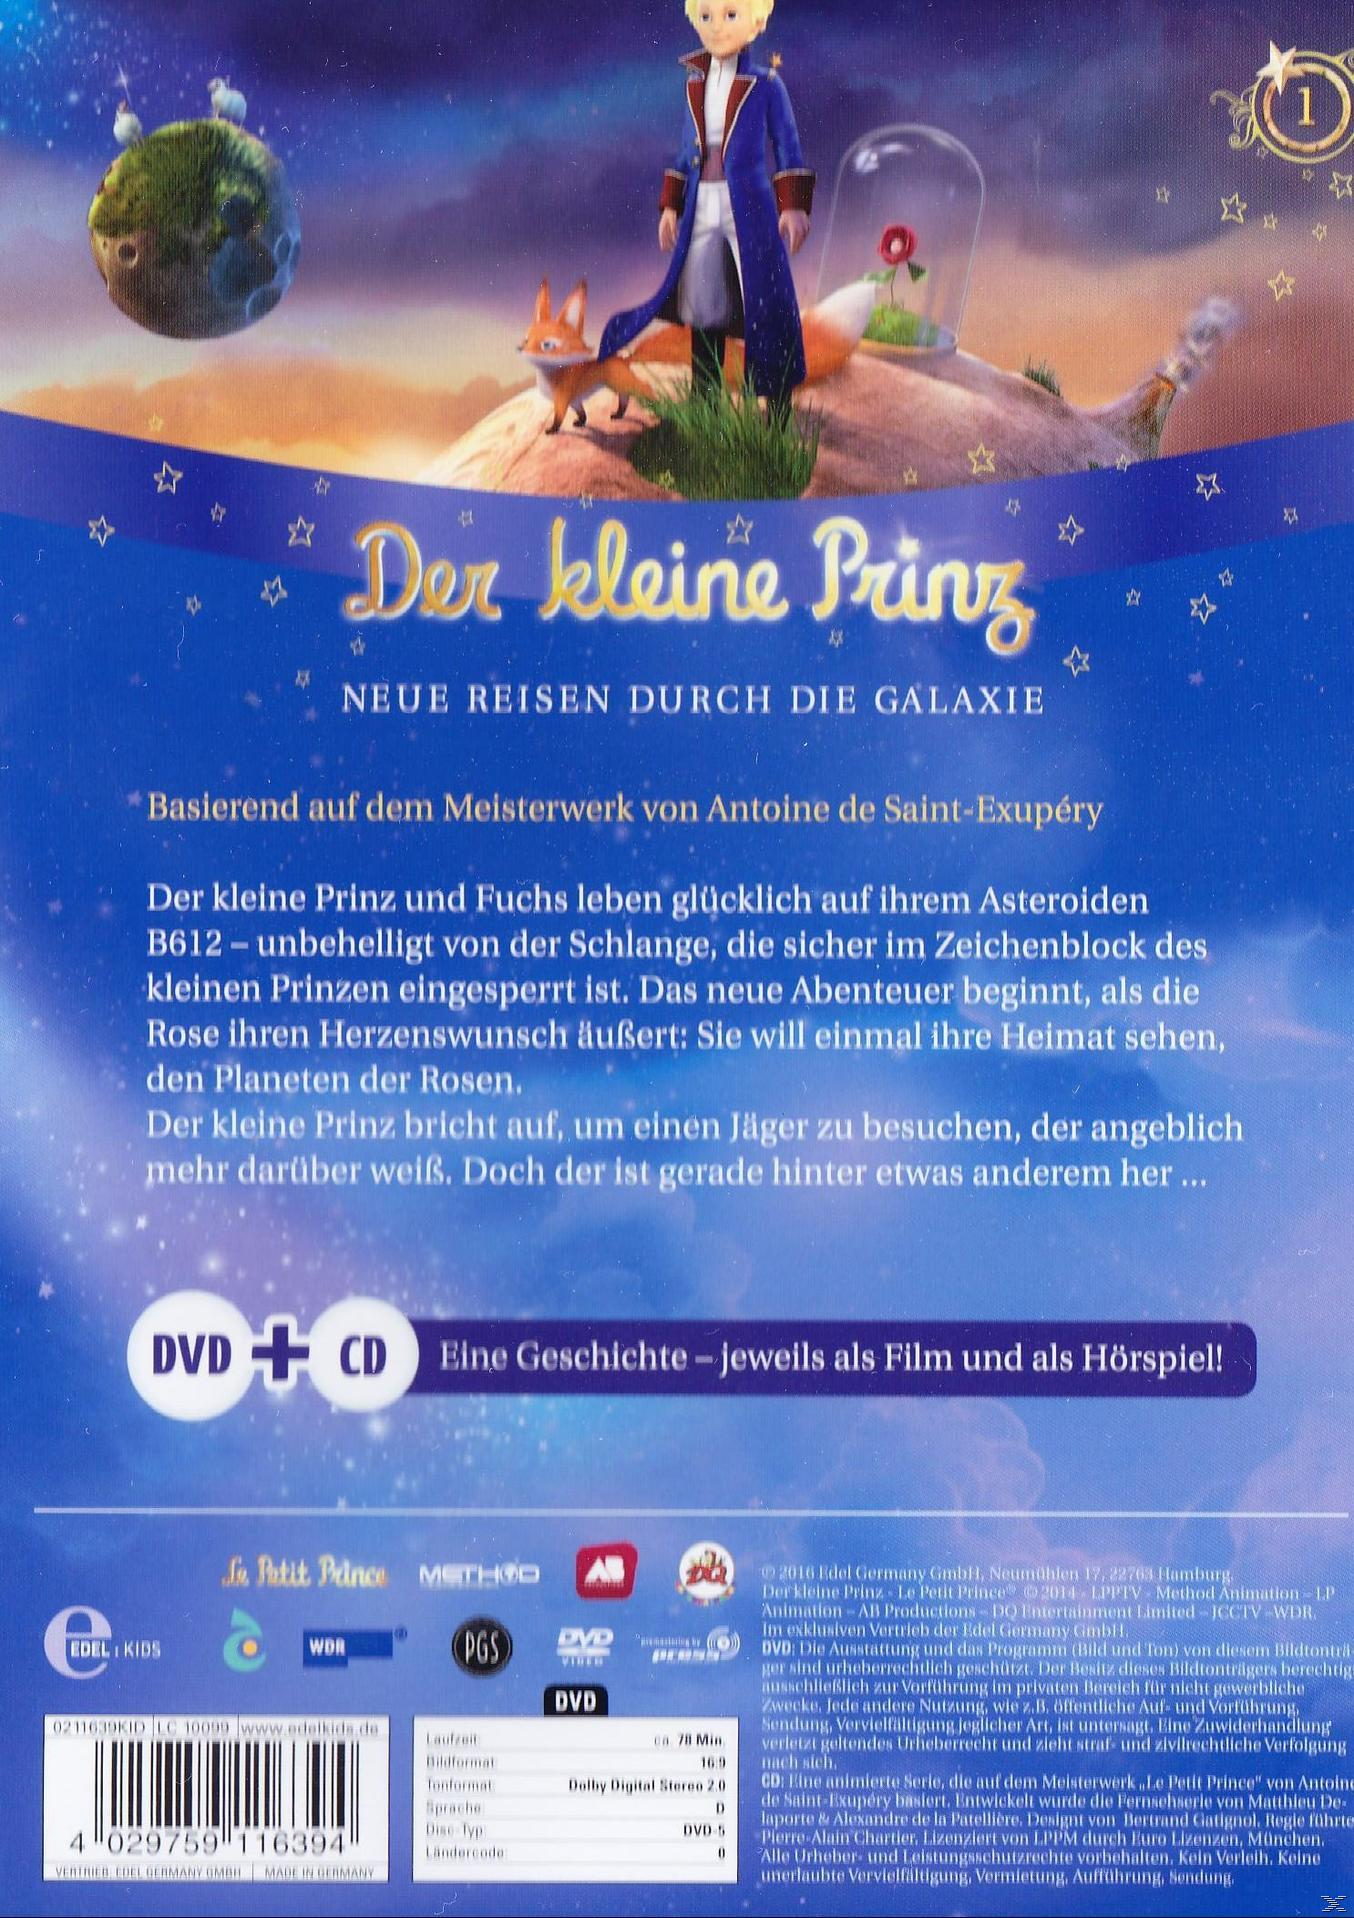 Neue die + DVD - Geschenkbox) Galaxie Prinz Reisen 2in1 Der durch CD (Exklusive kleine